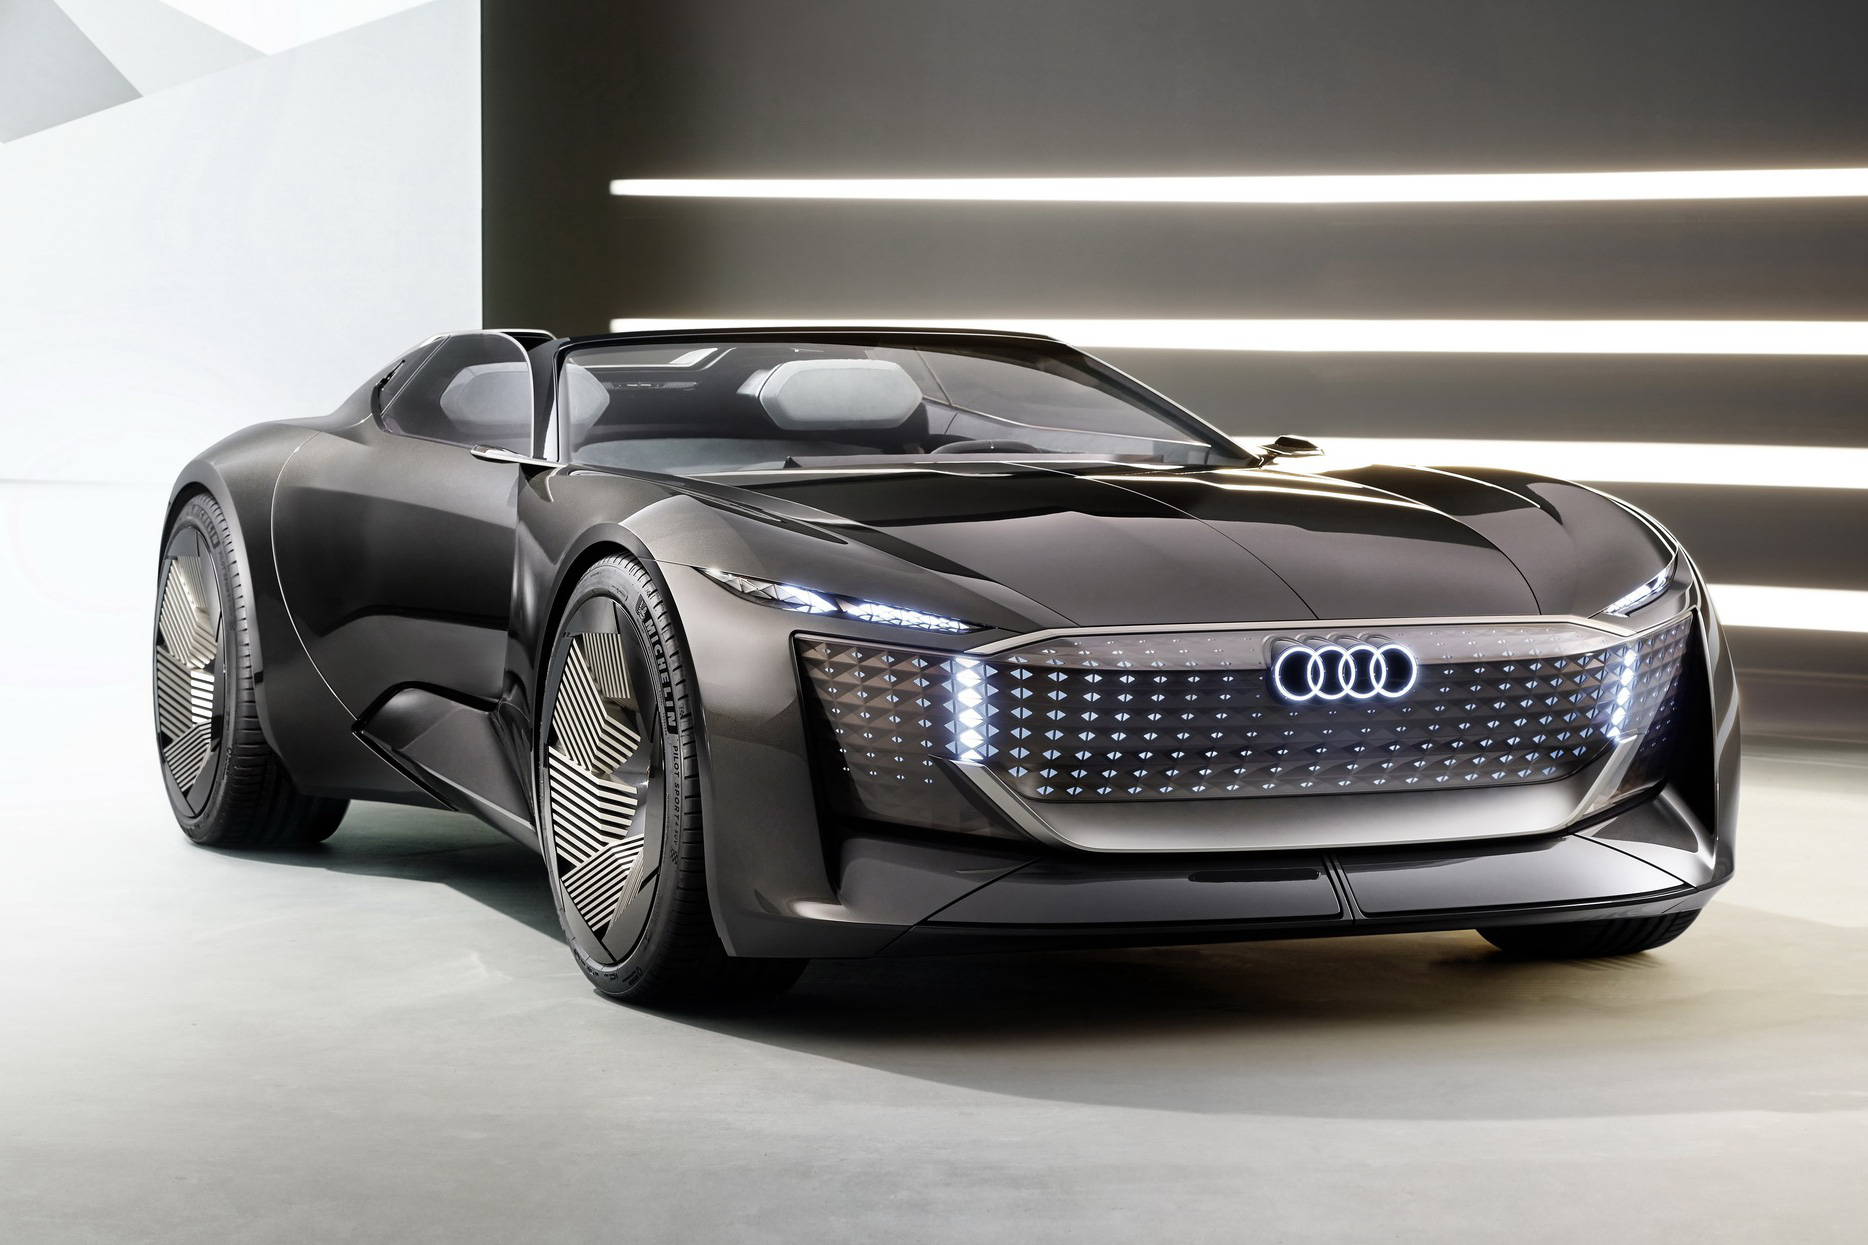 Ra mắt Audi Skysphere - Siêu xe biến hình, dài ra ngắn lại hay thay cả táp lô trong vài nốt nhạc